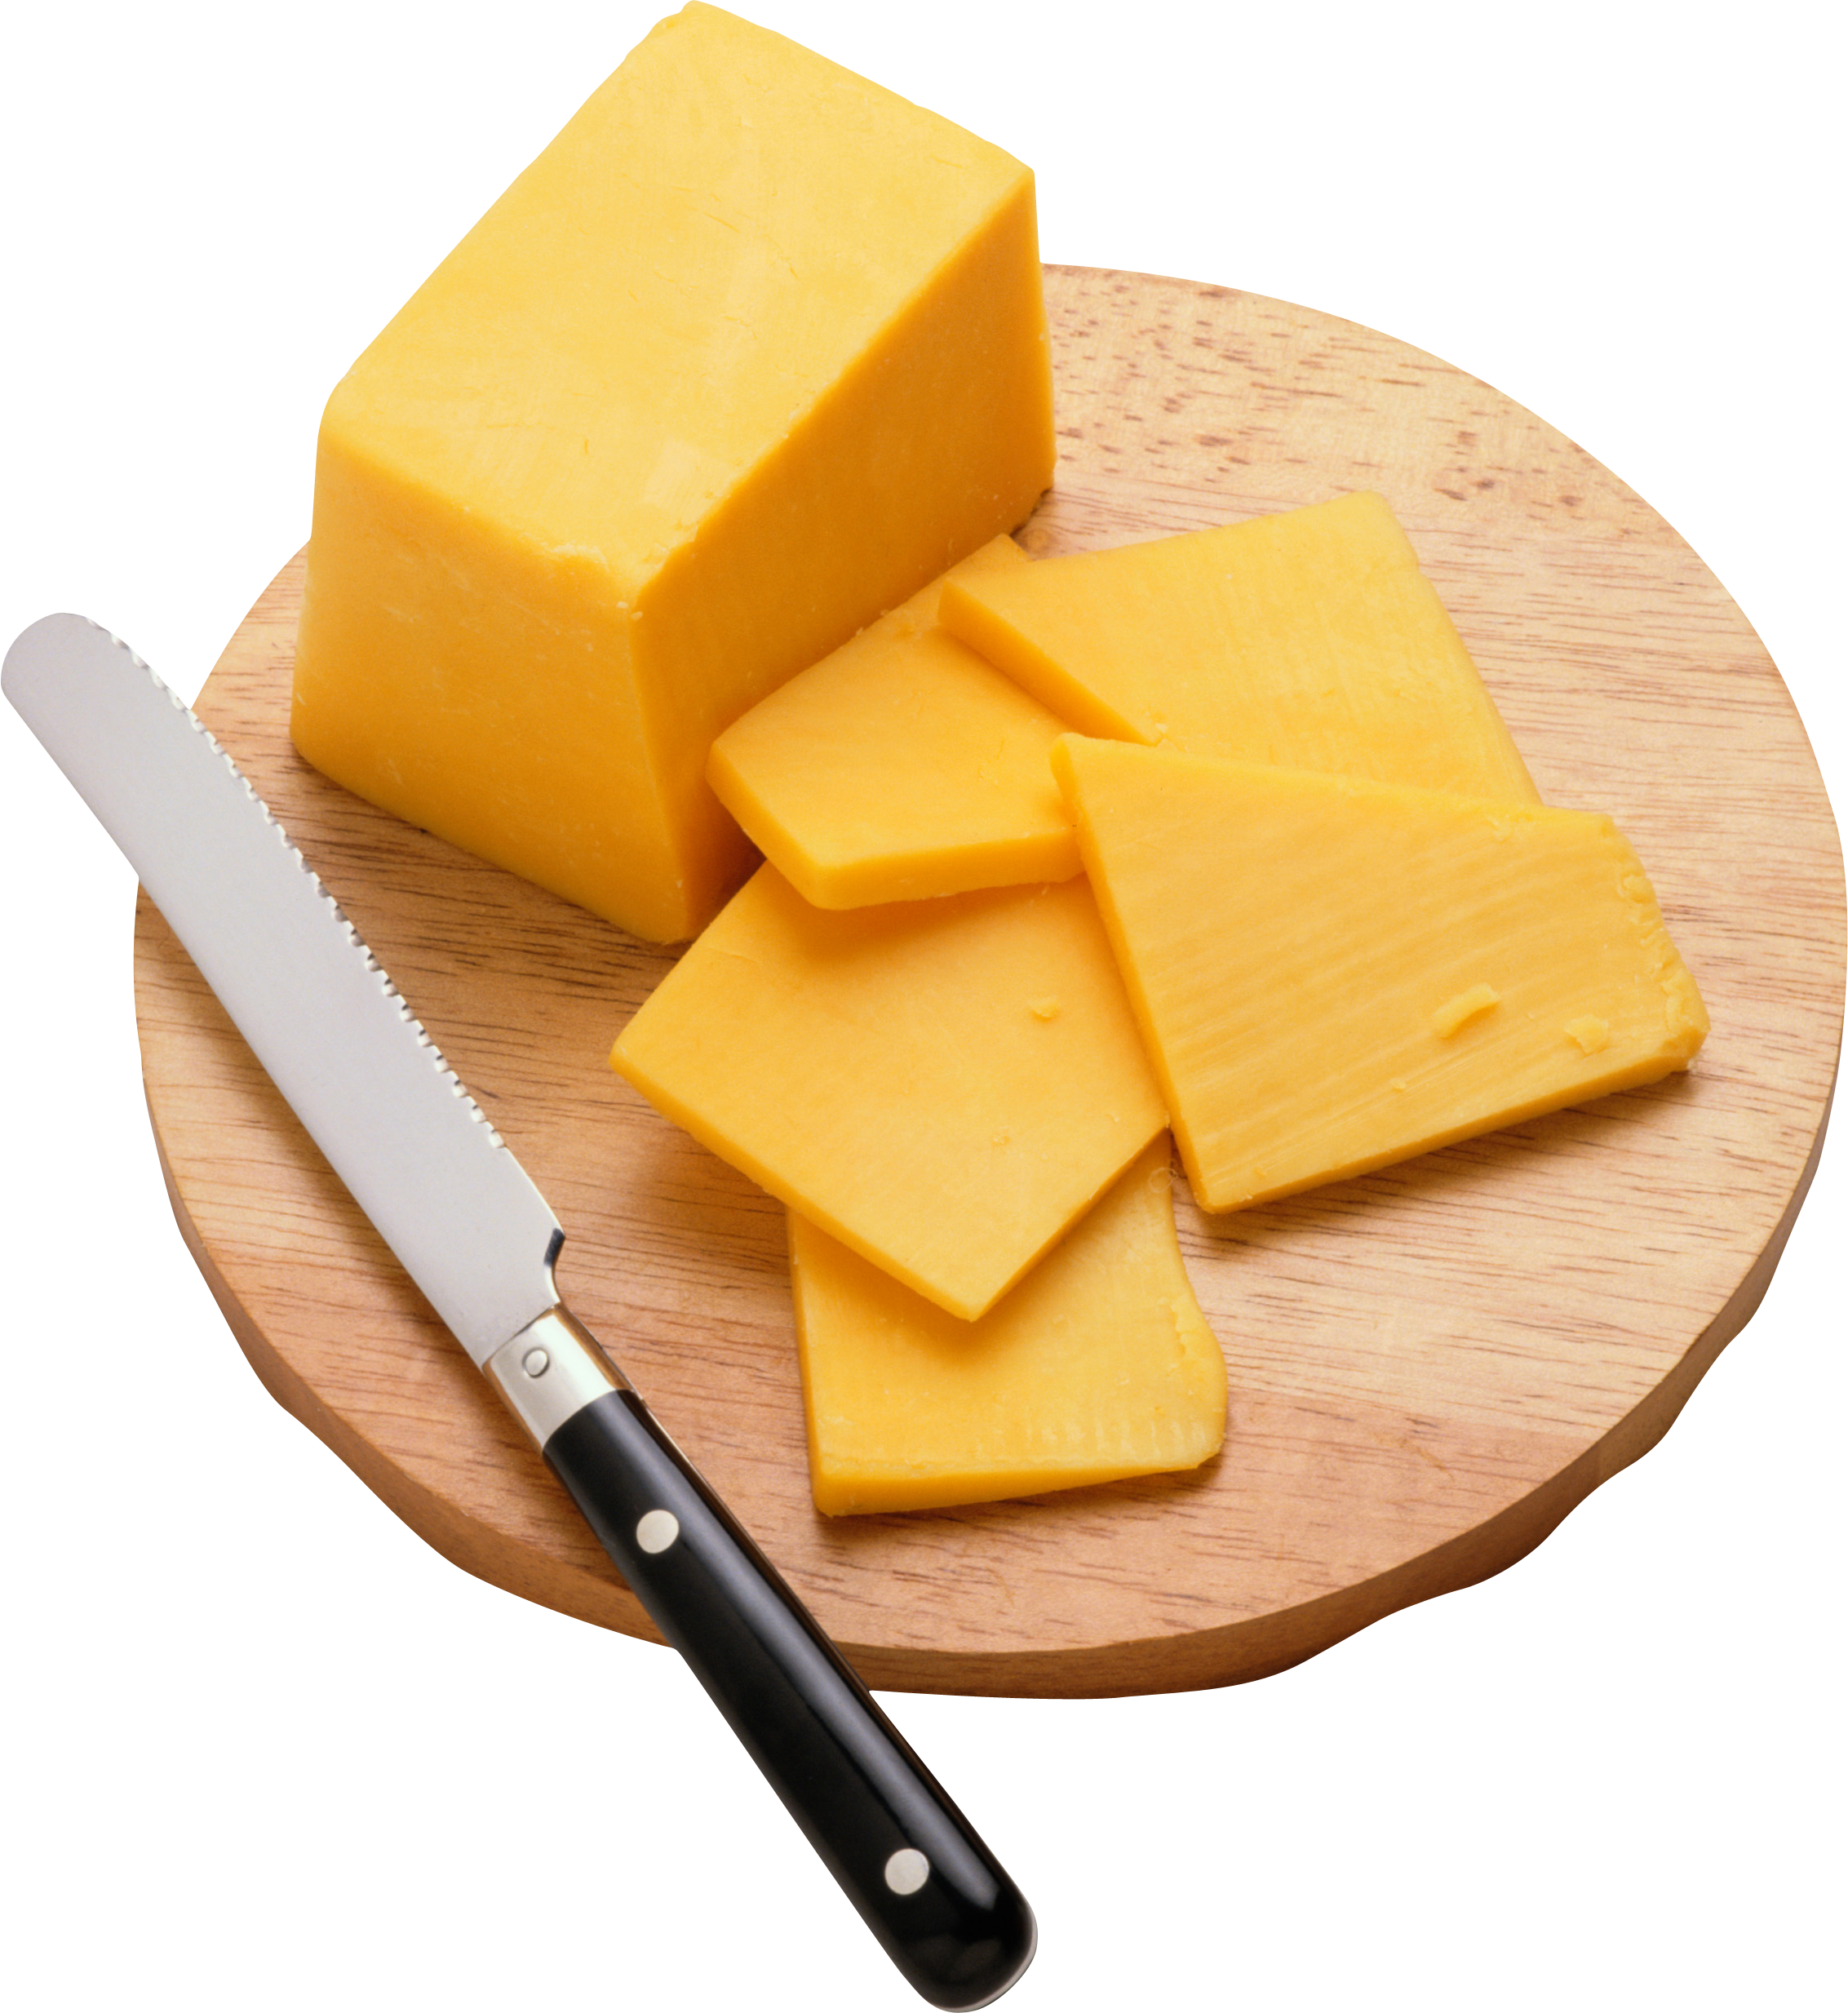 Fatias de queijo